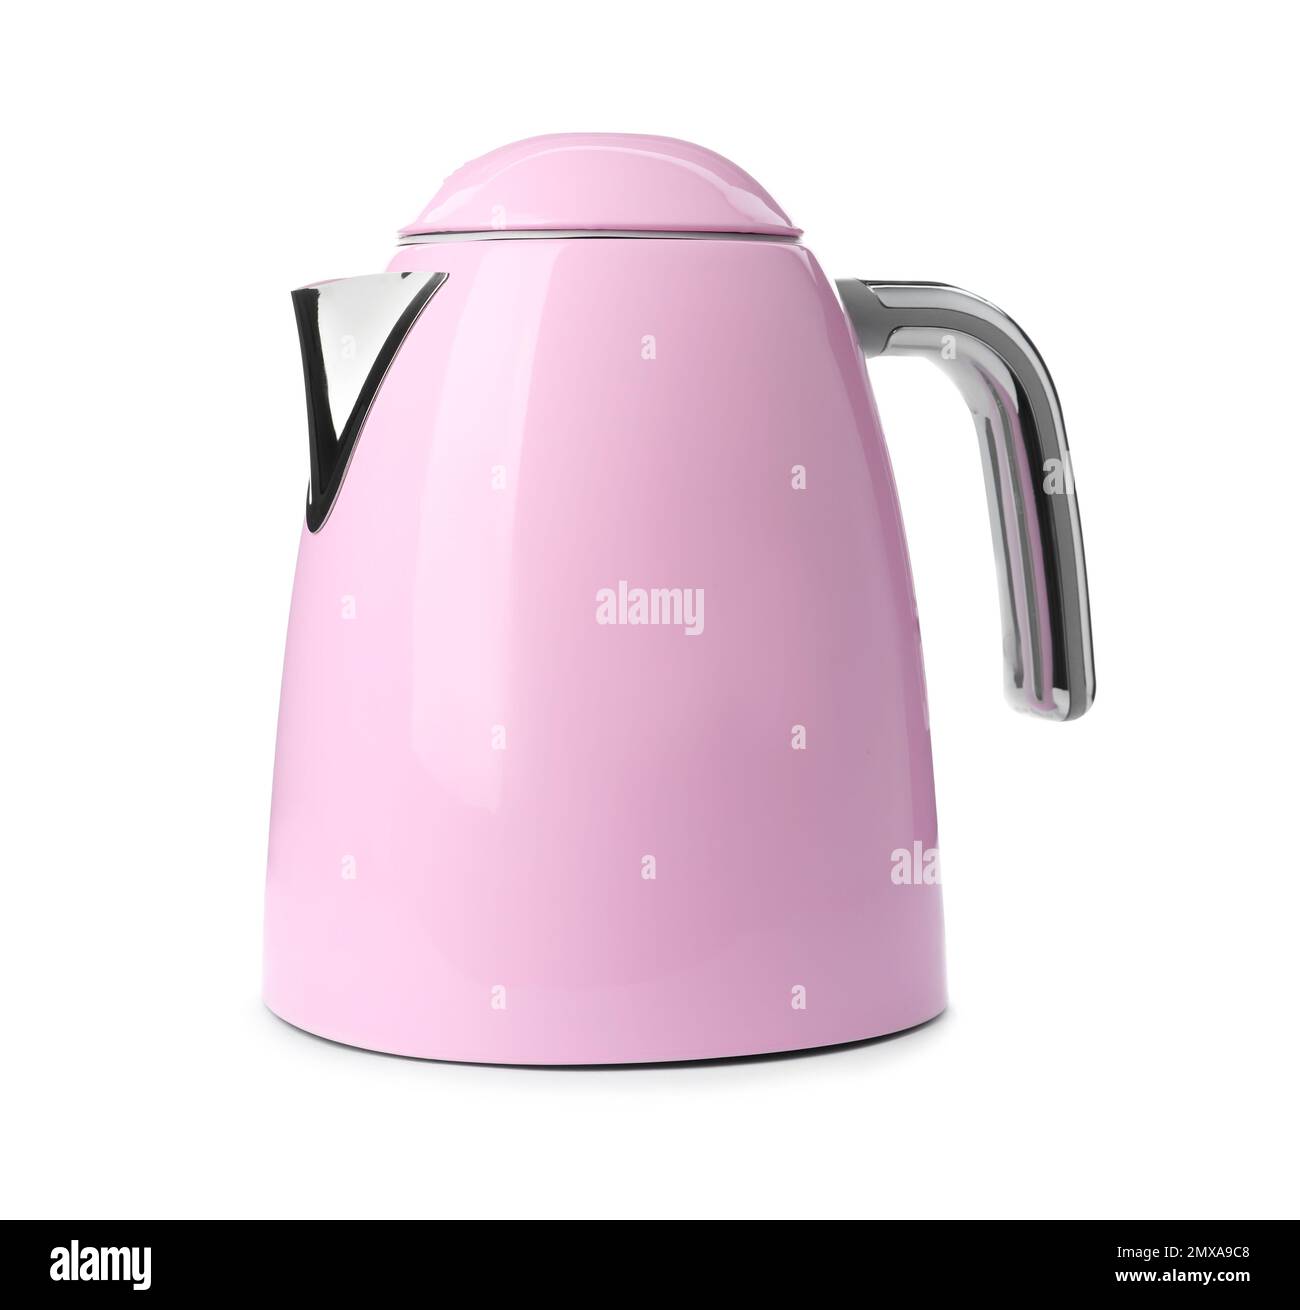 https://c8.alamy.com/comp/2MXA9C8/modern-pink-electric-kettle-isolated-on-white-2MXA9C8.jpg